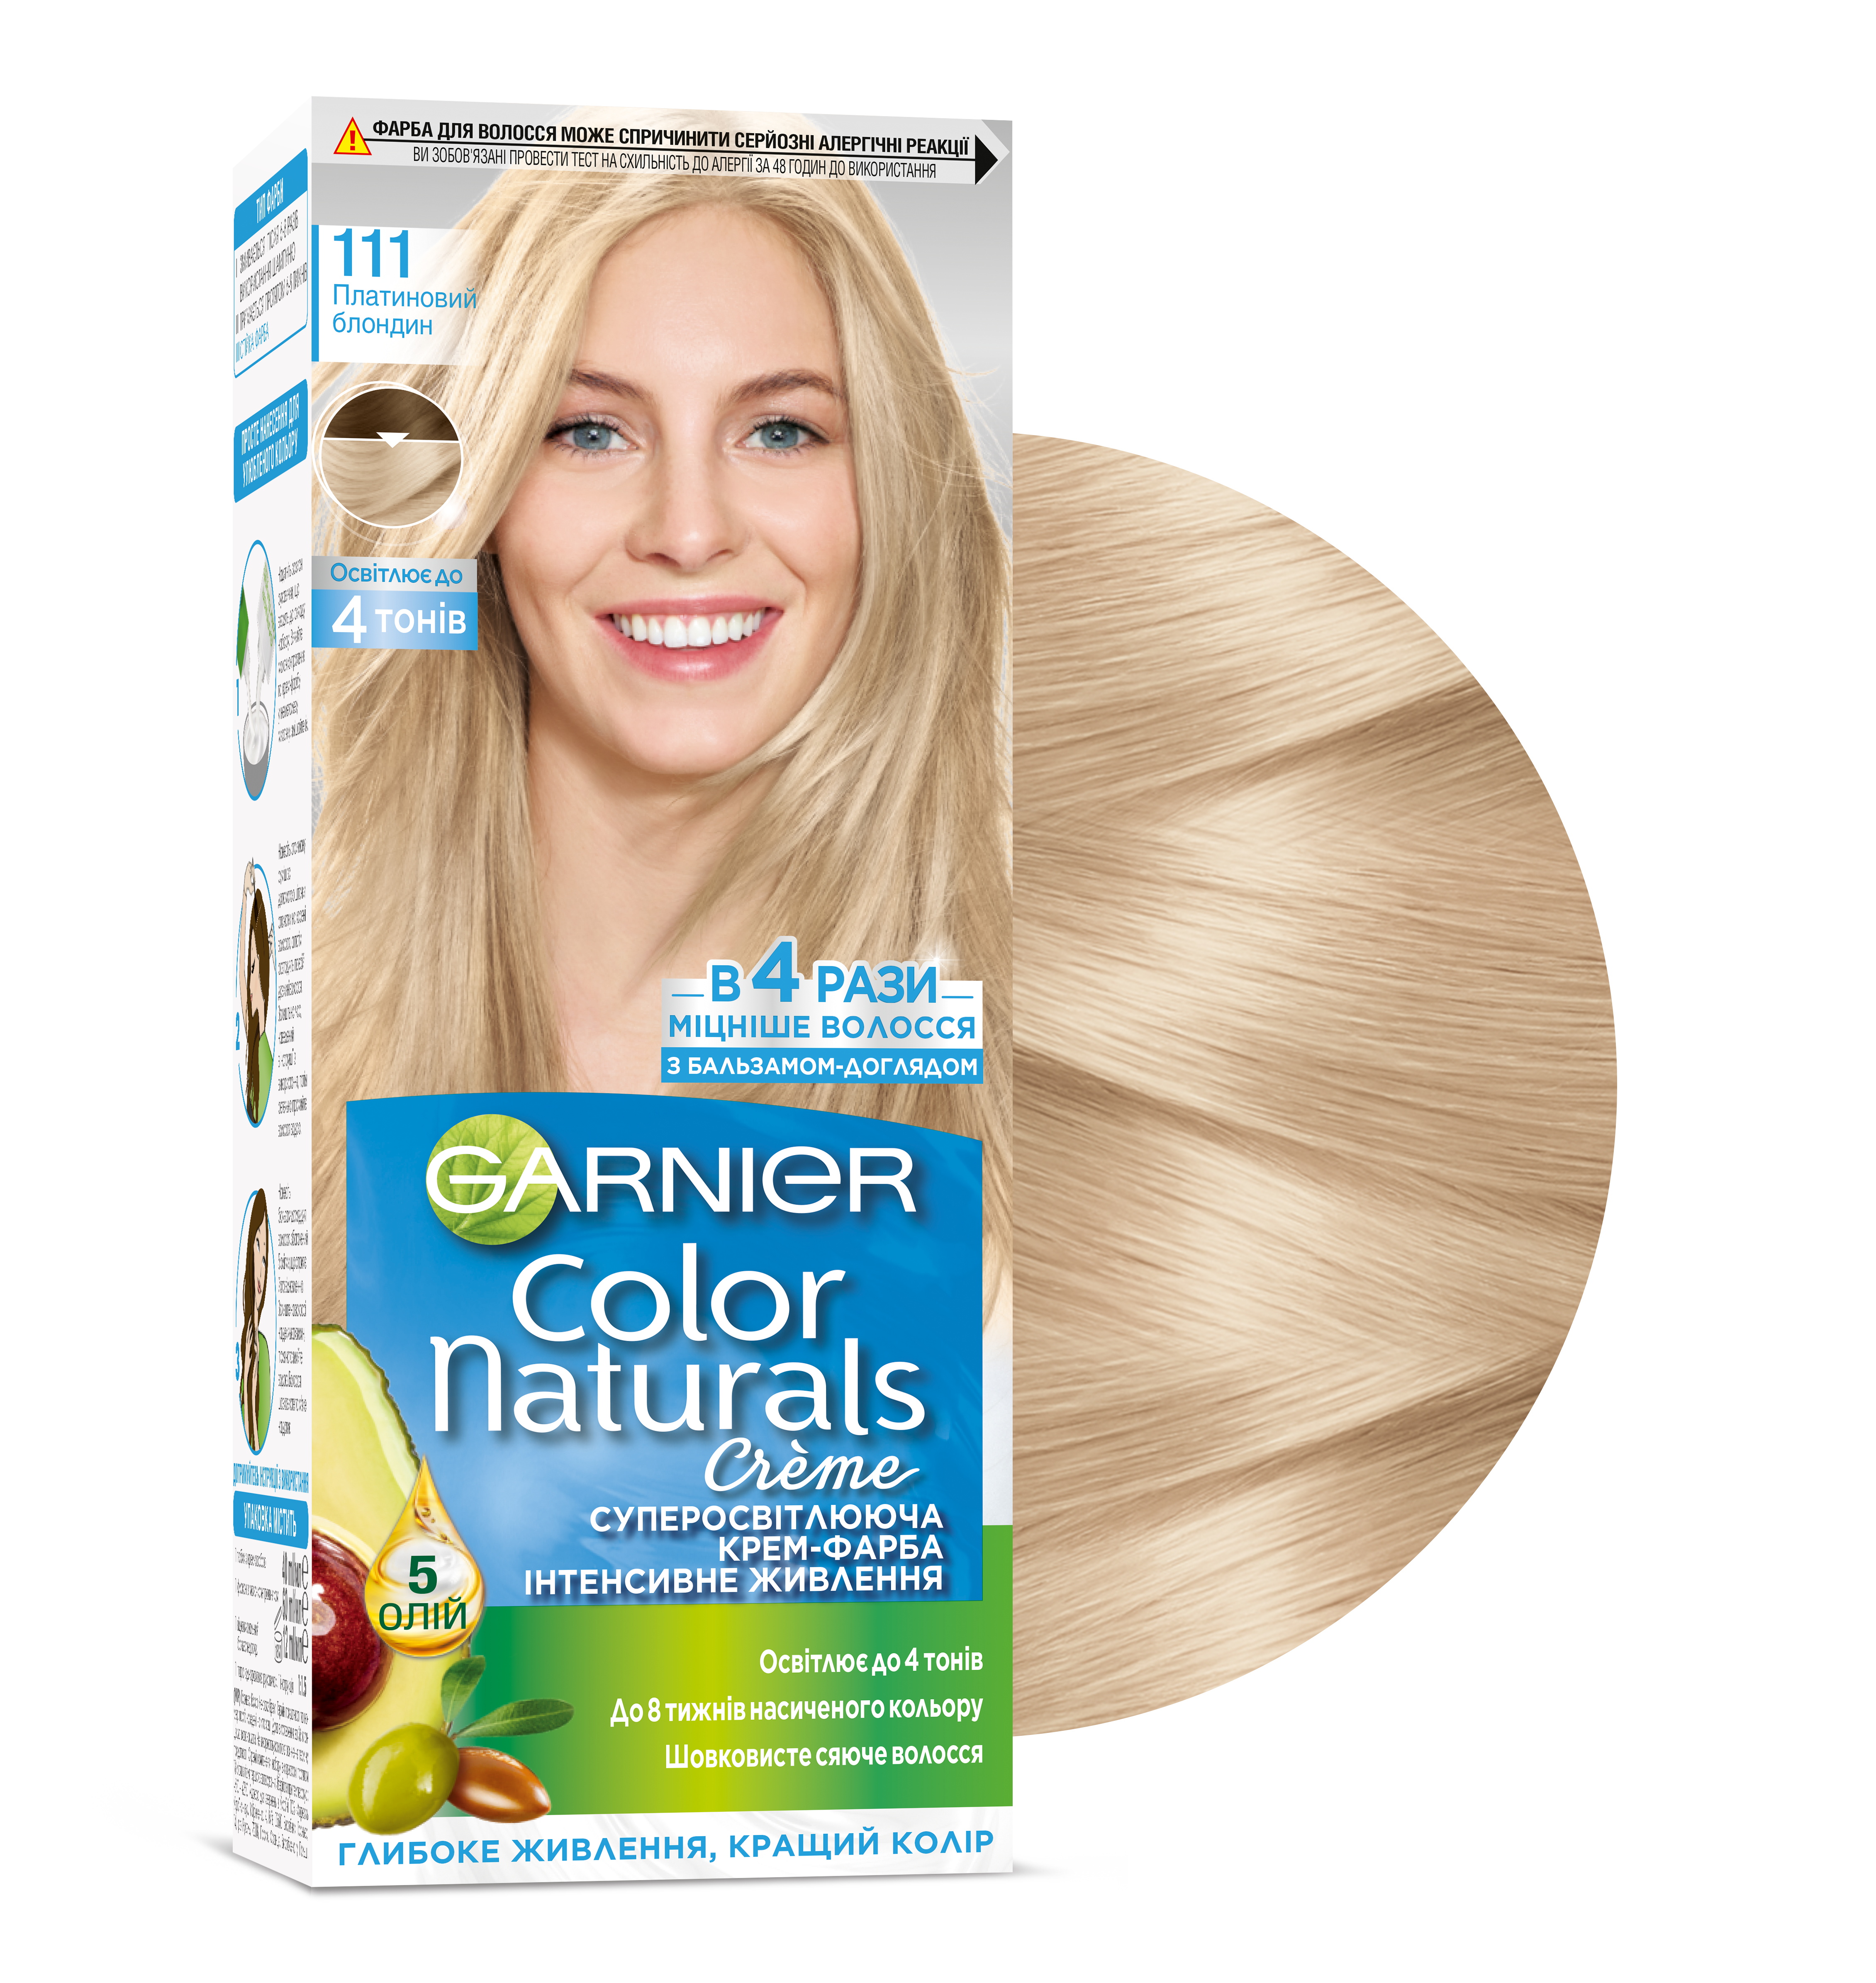 Краска для волос Garnier Color Naturals, тон 111 (Платиновый блондин), 110 мл (C4431826) - фото 2